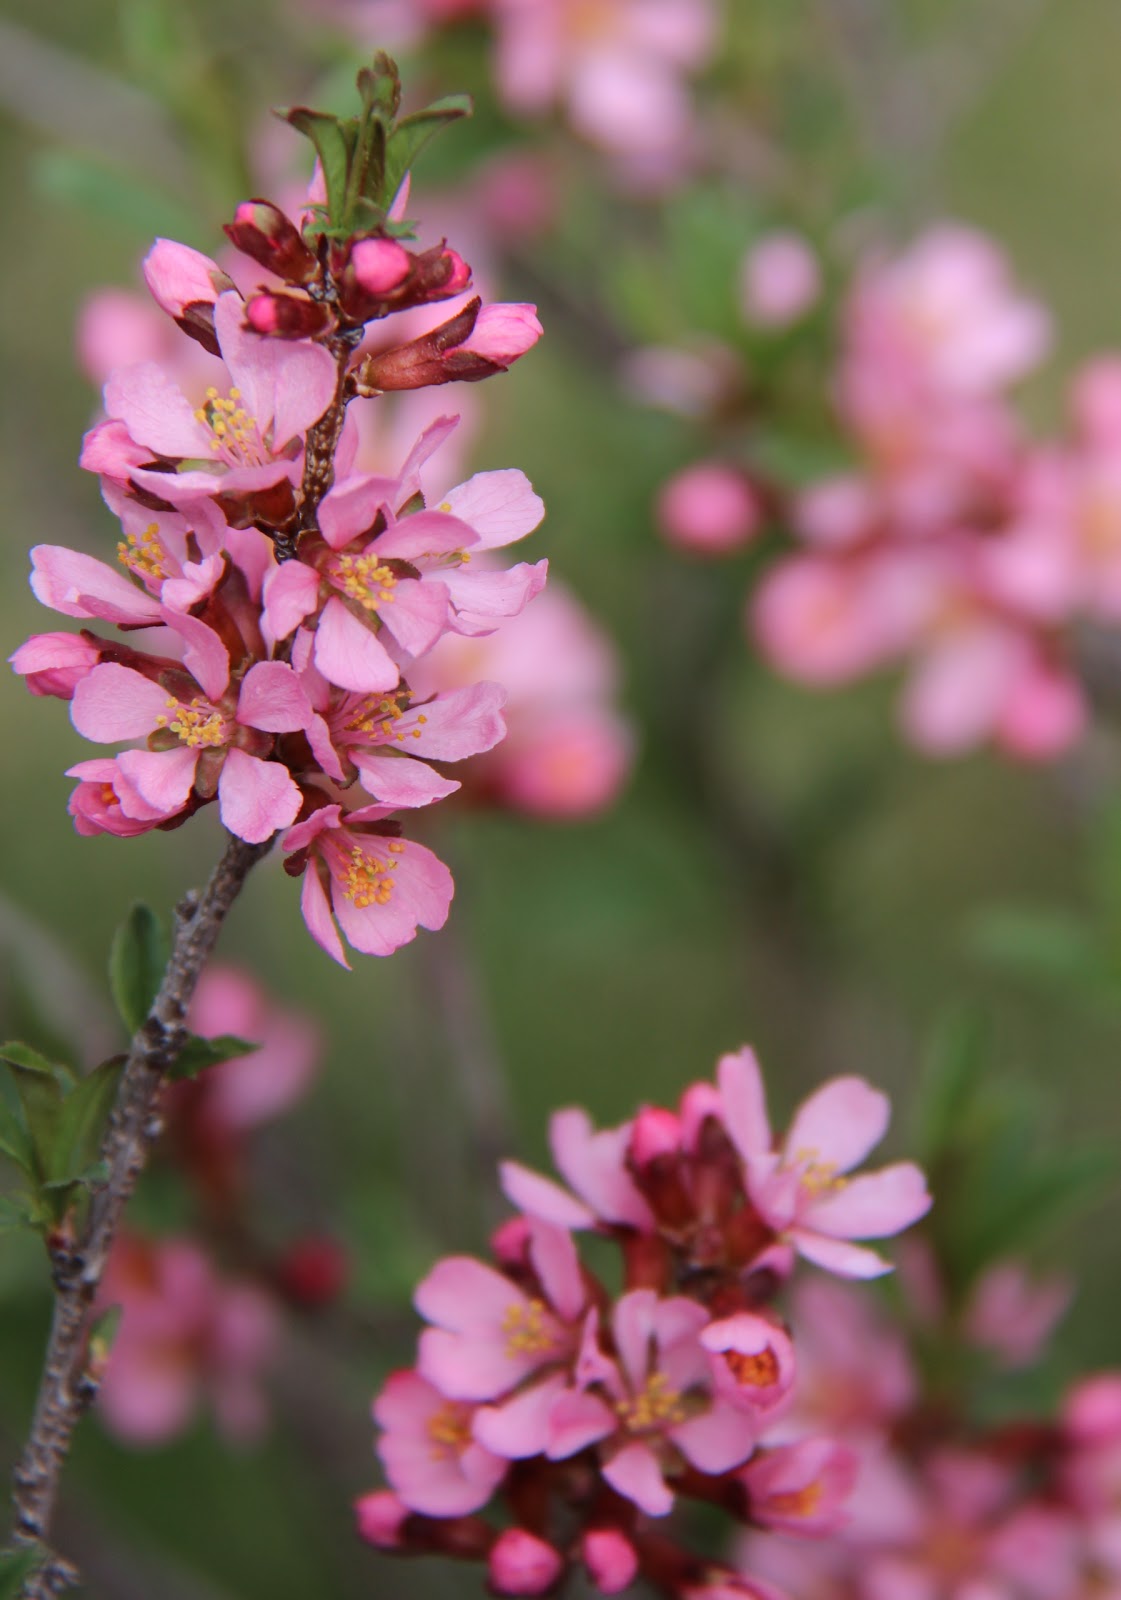 Les jardins partout: Flowering Almond Bush